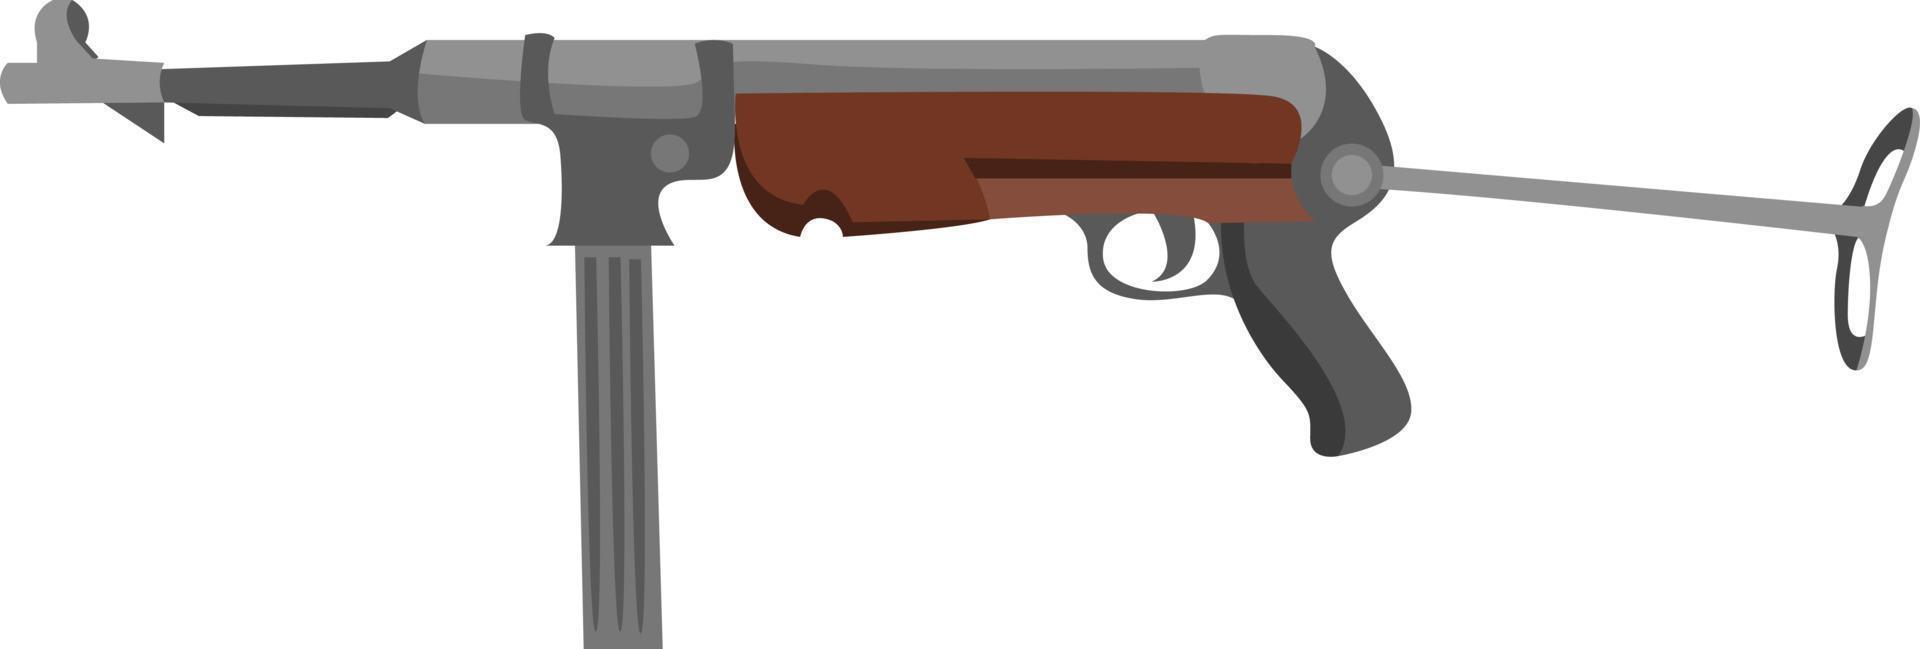 MP 40 gun, illustration, vector on white background